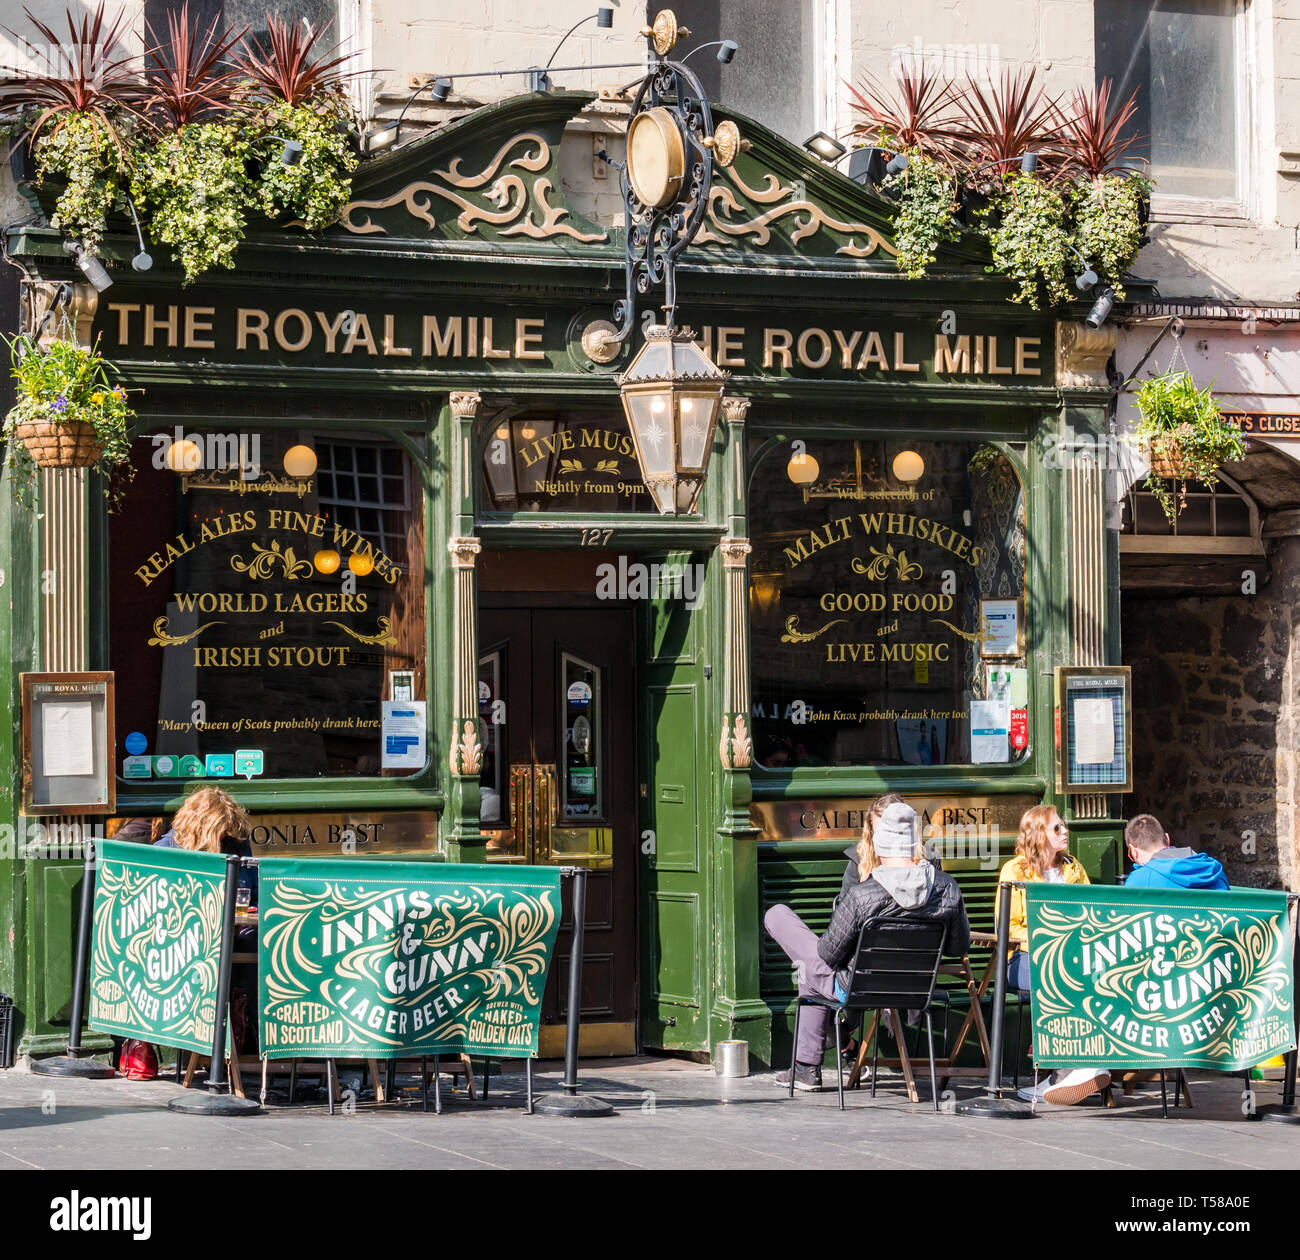 Vor der Royal Mile Pub mit Menschen auf bürgersteig Tische draußen sitzen ich Sonnenschein bin, Royal Mile, Edinburgh, Schottland, Großbritannien Stockfoto